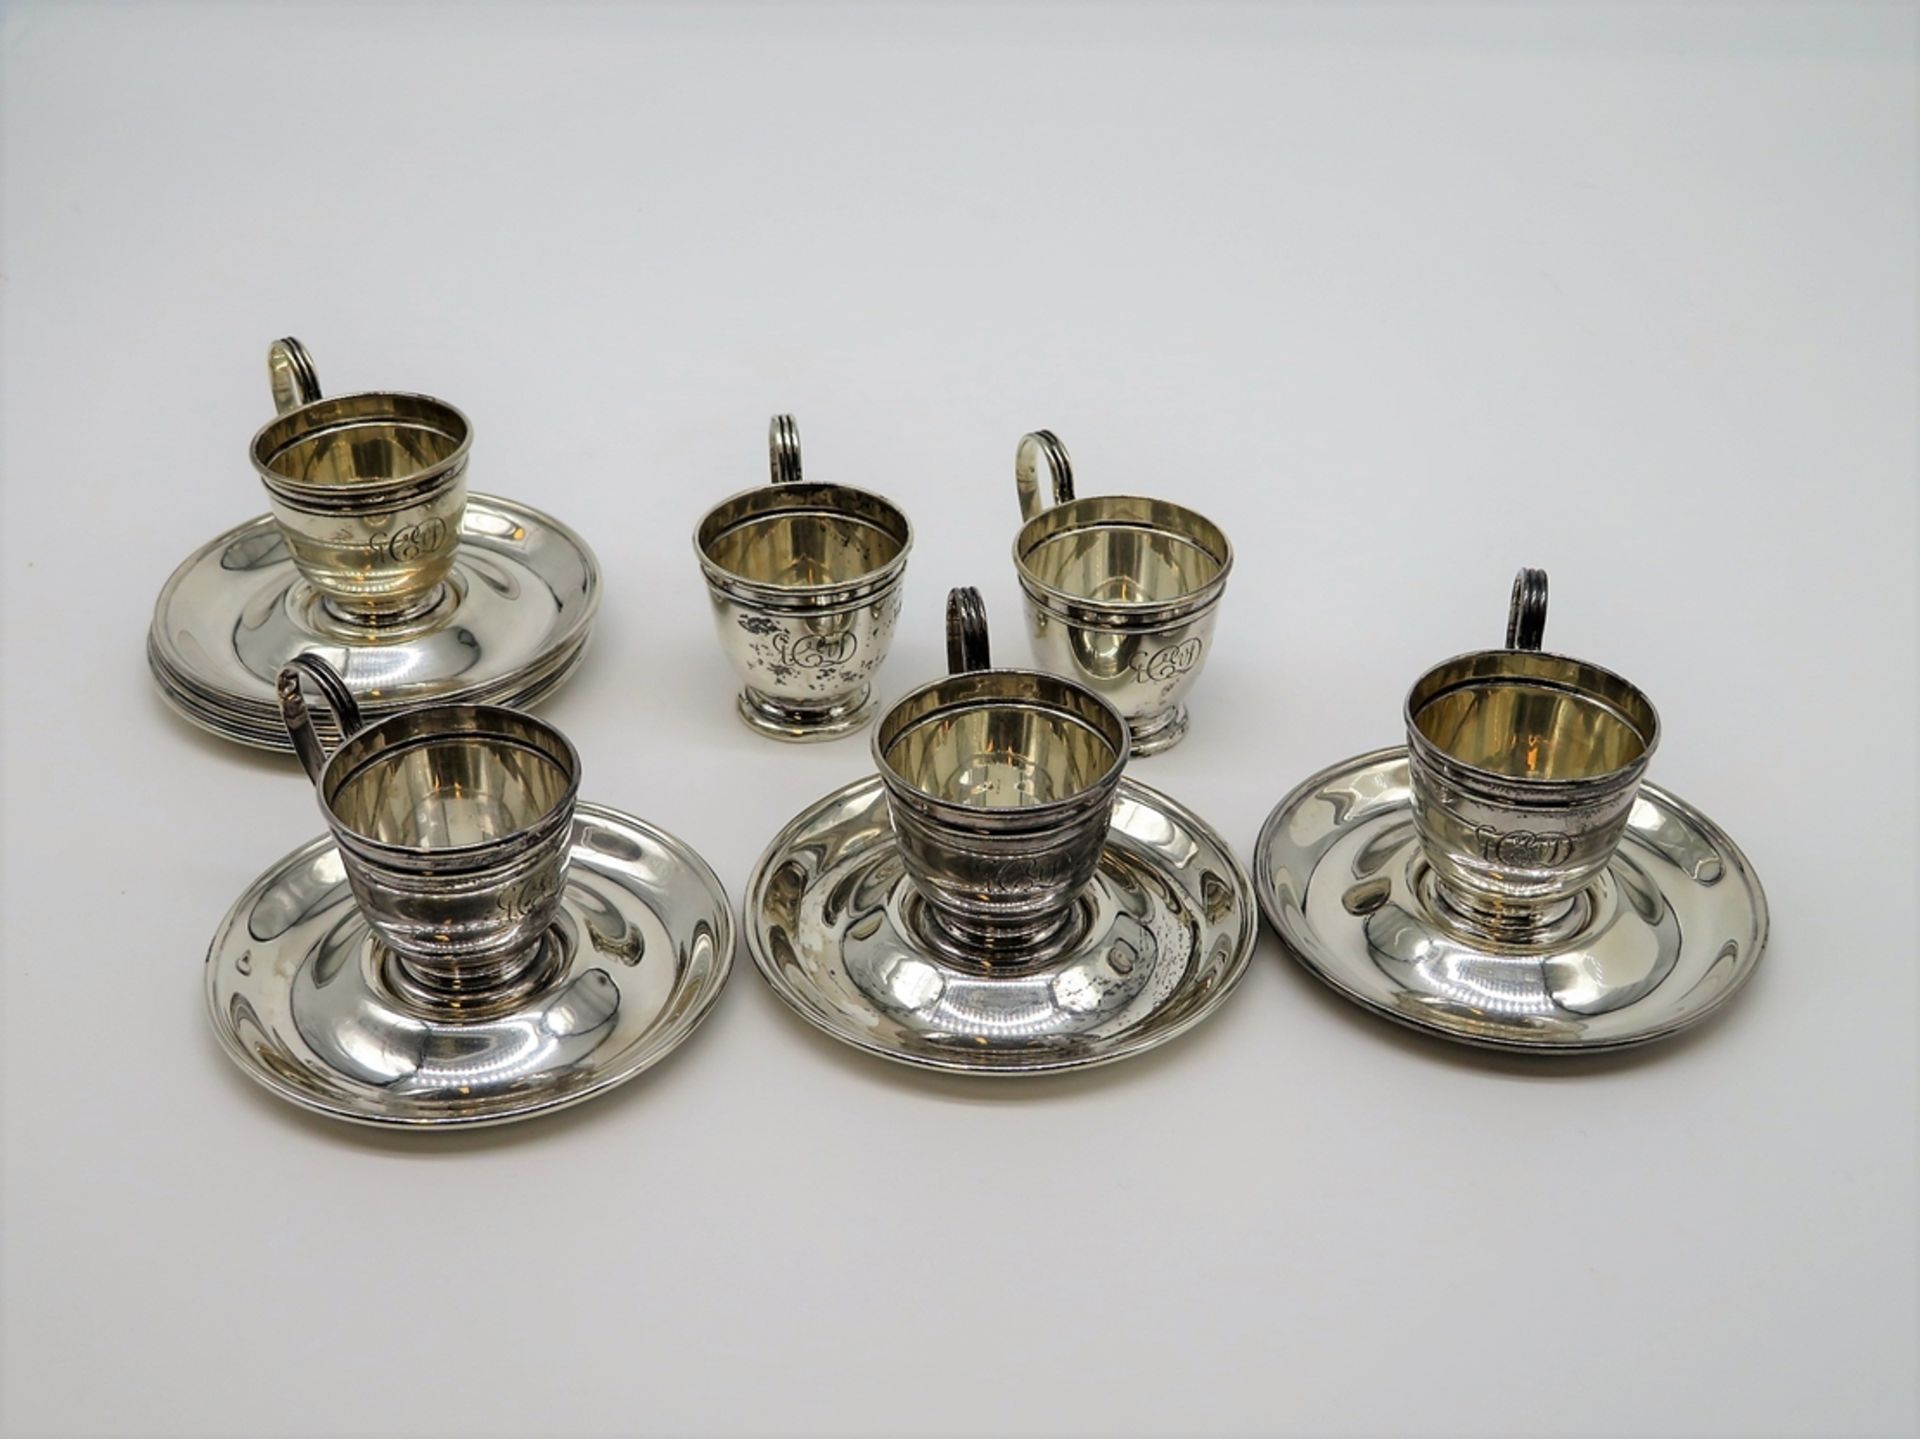 6 Mokka-Glashalter mit UT, England, gem. "Gorham", 925er Sterlingsilber, gepunzt, 320 g, Glaseinsät